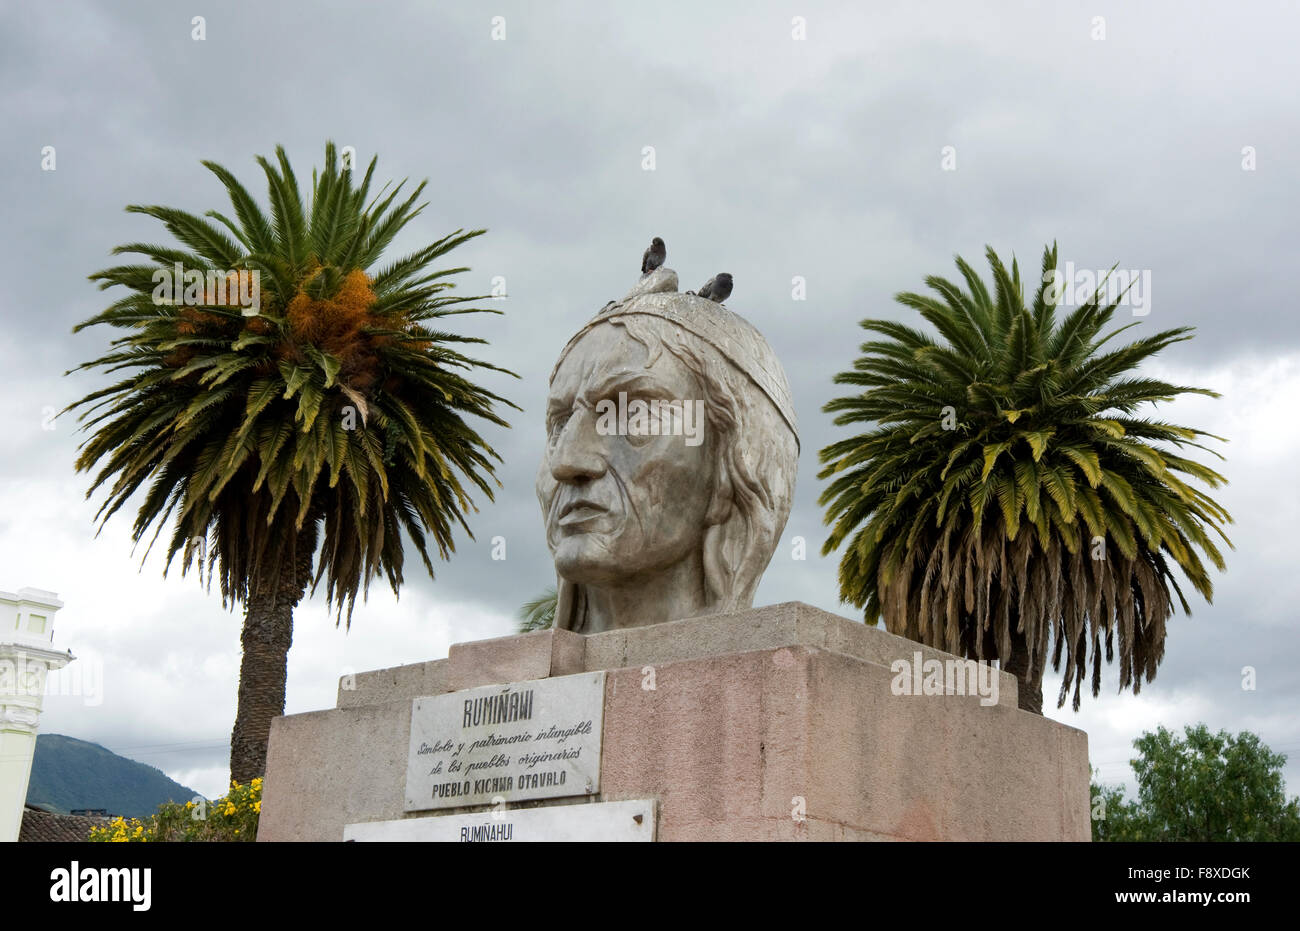 Estatua en la plaza pública de la ciudad de Otavalo, Ecuador Foto de stock